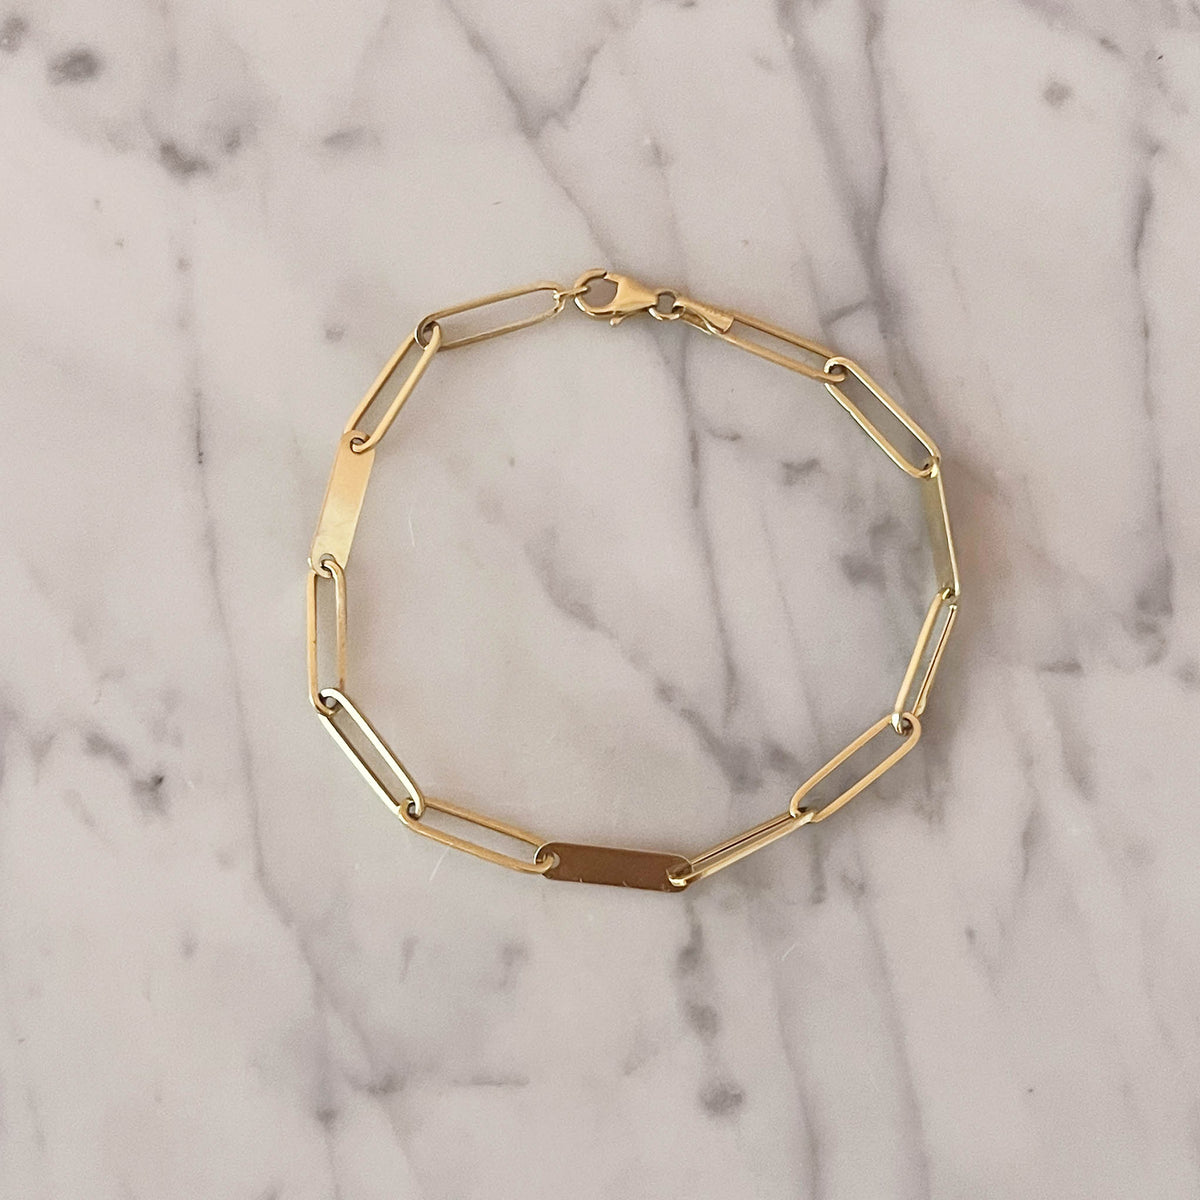 Solid 14kt Gold Paper Clip Bar Bracelet